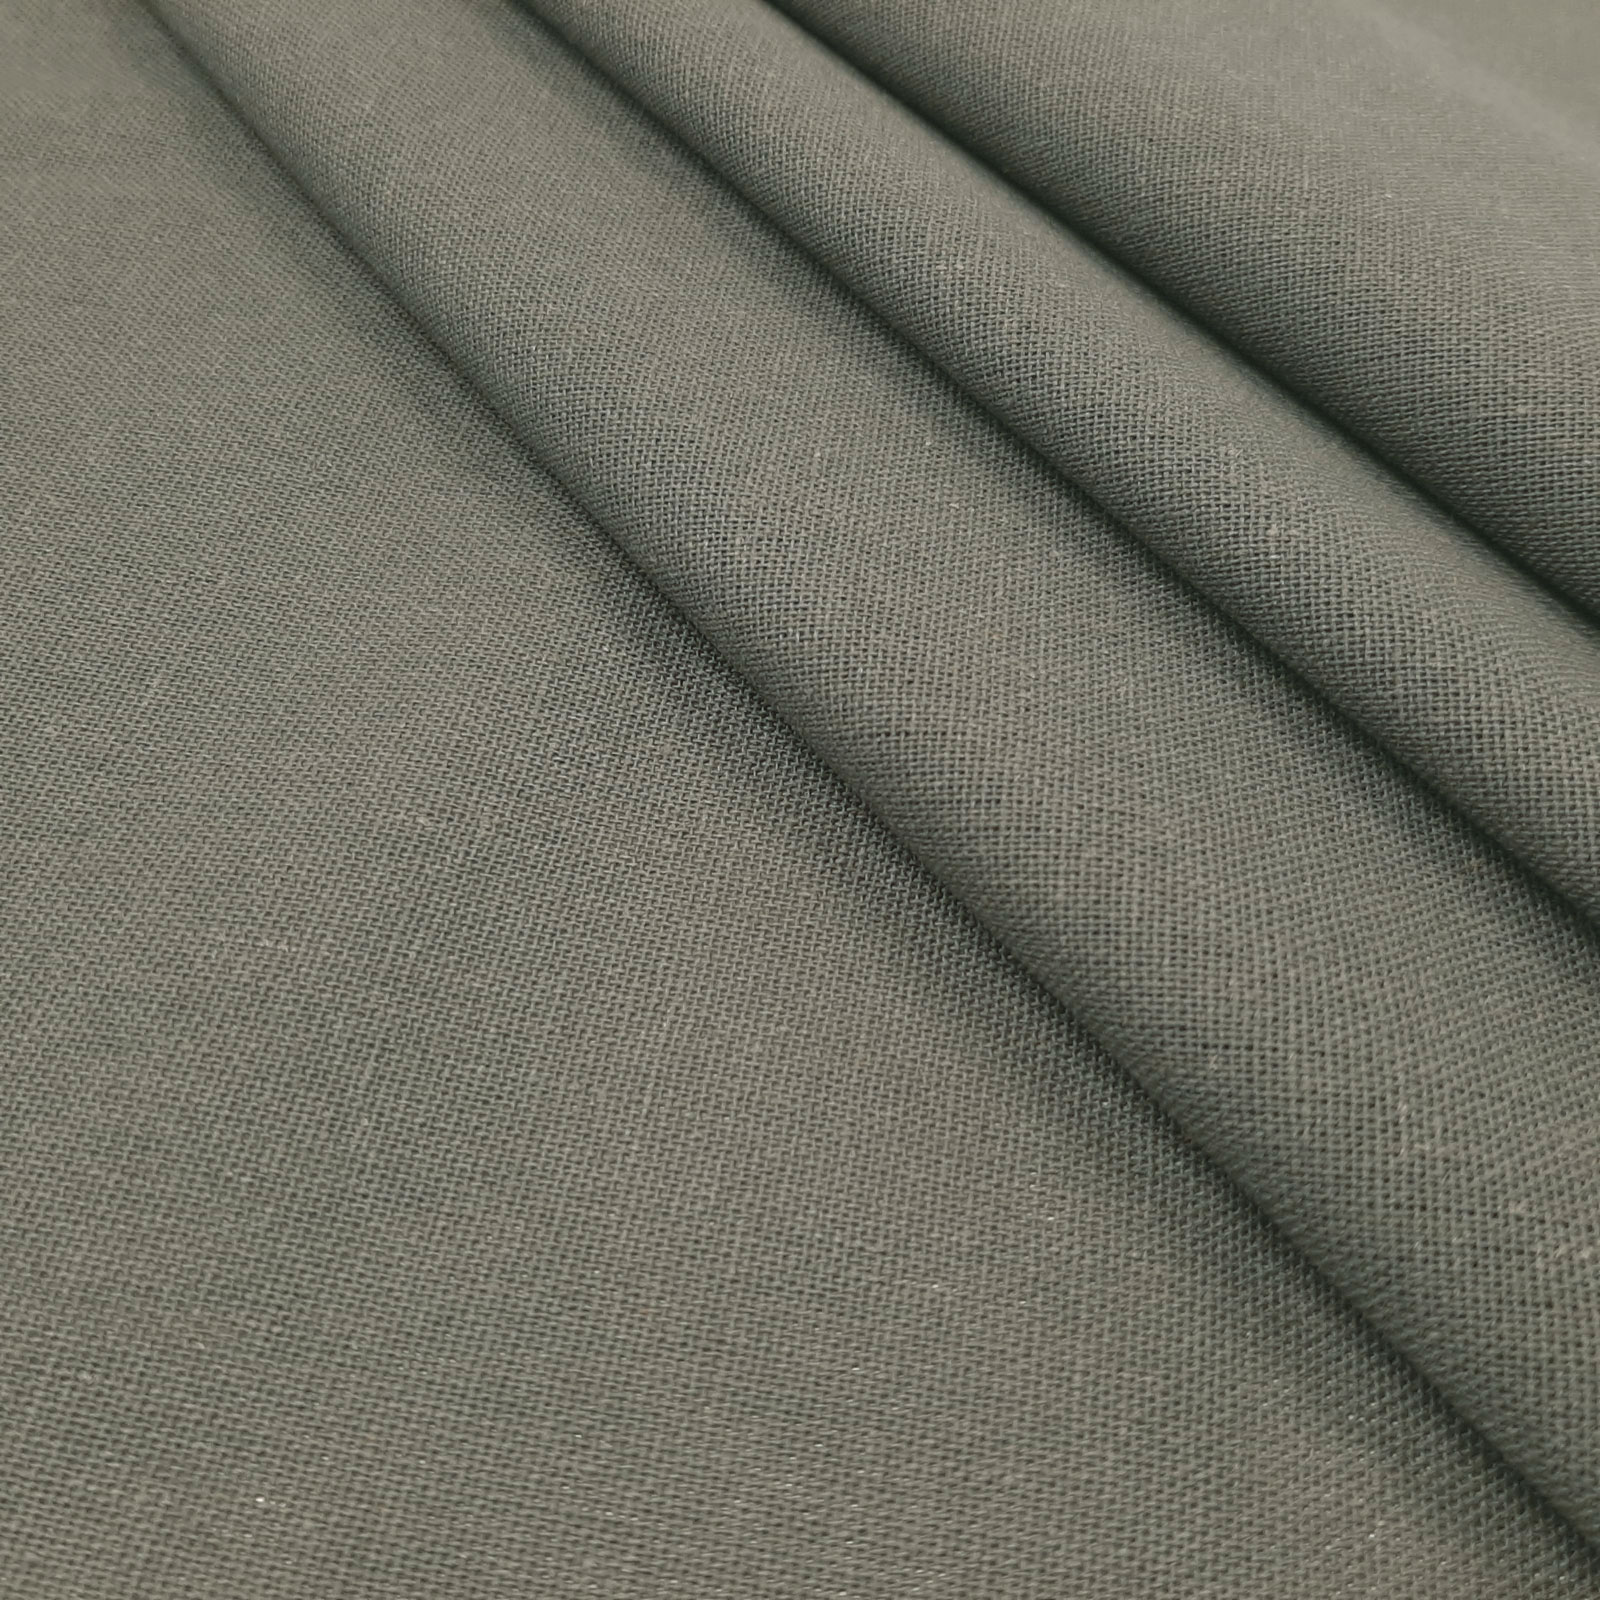 Bella - tessuto naturale di cotone e lino - Oscuro grigio